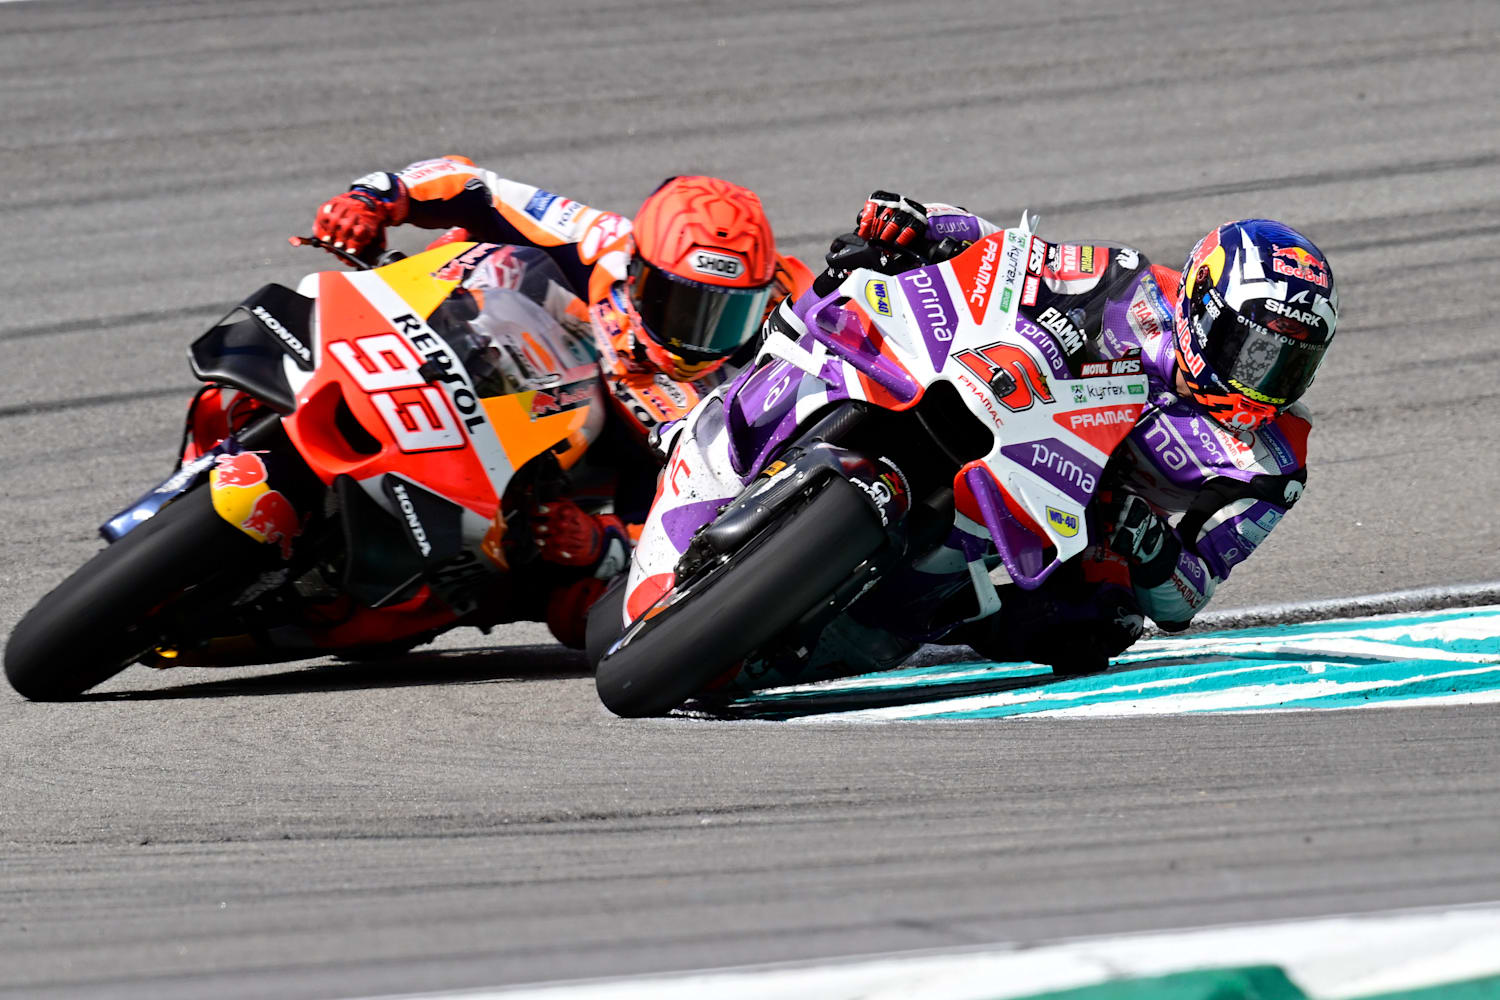 MotoGP to host races in India, Kazakhstan next year in 21-race calendar